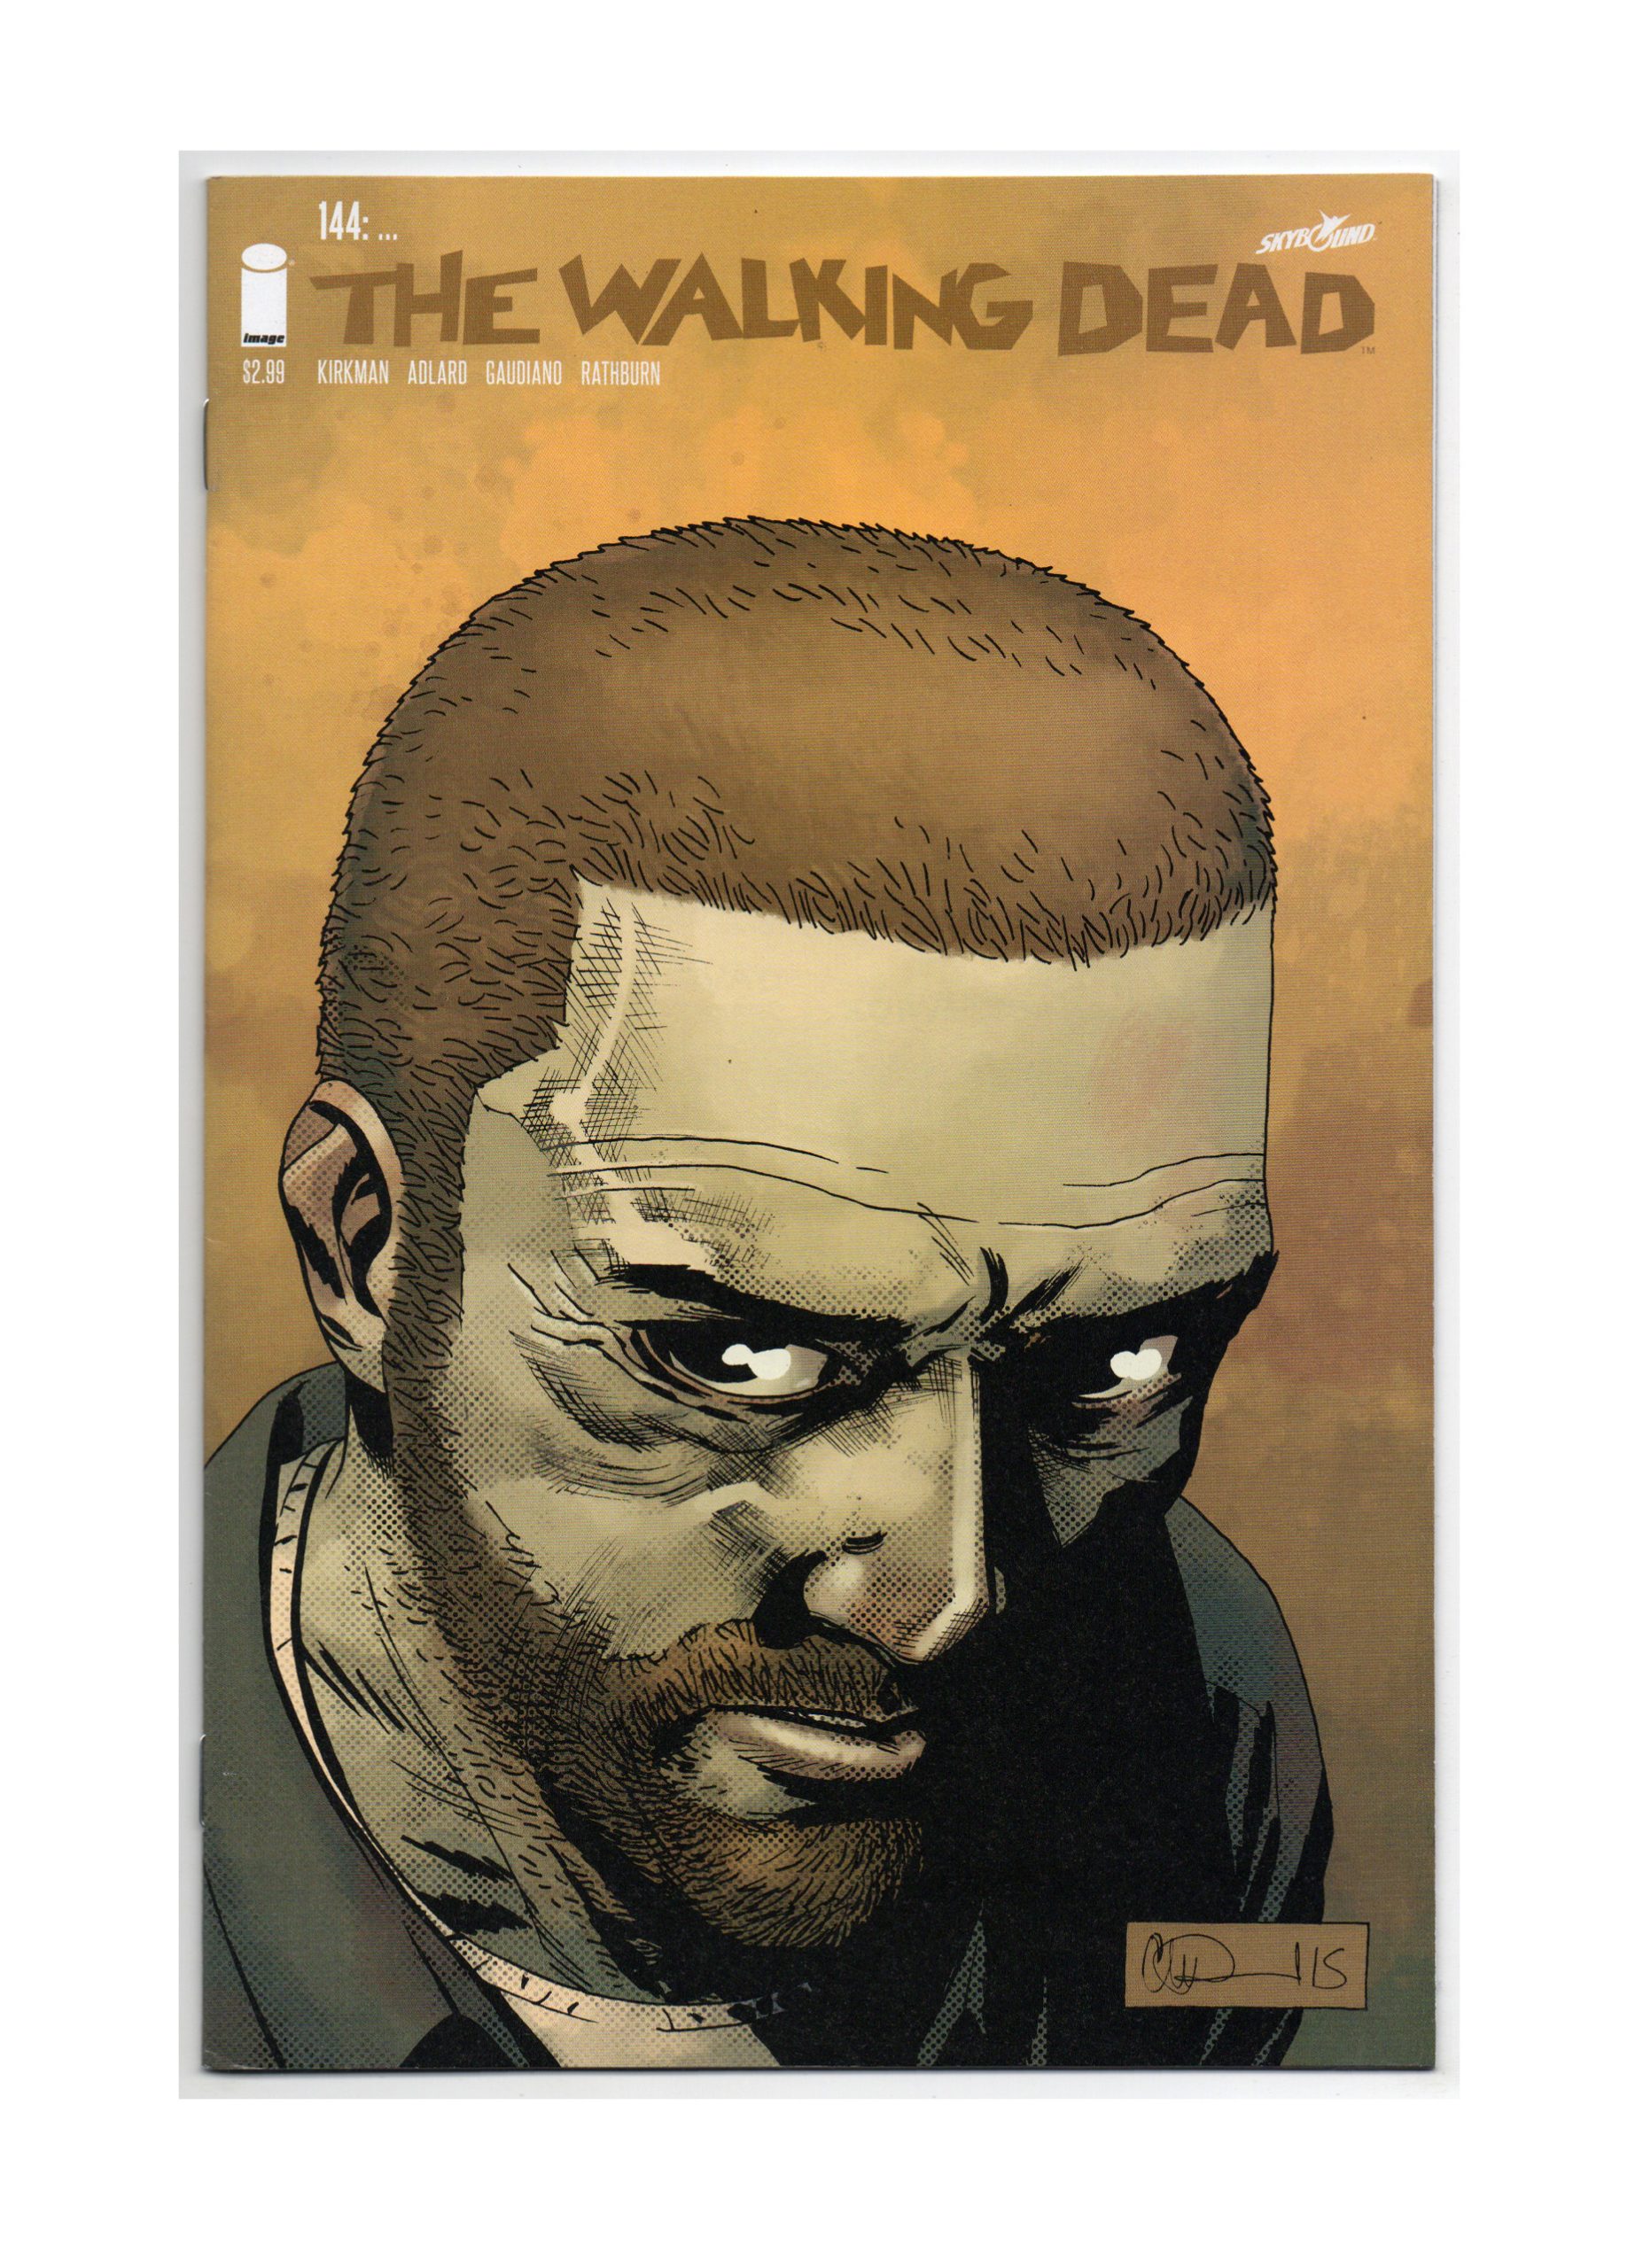 Walking Dead # 144 1st Print NM AMC Zombie Tons of Walking Dead Books 